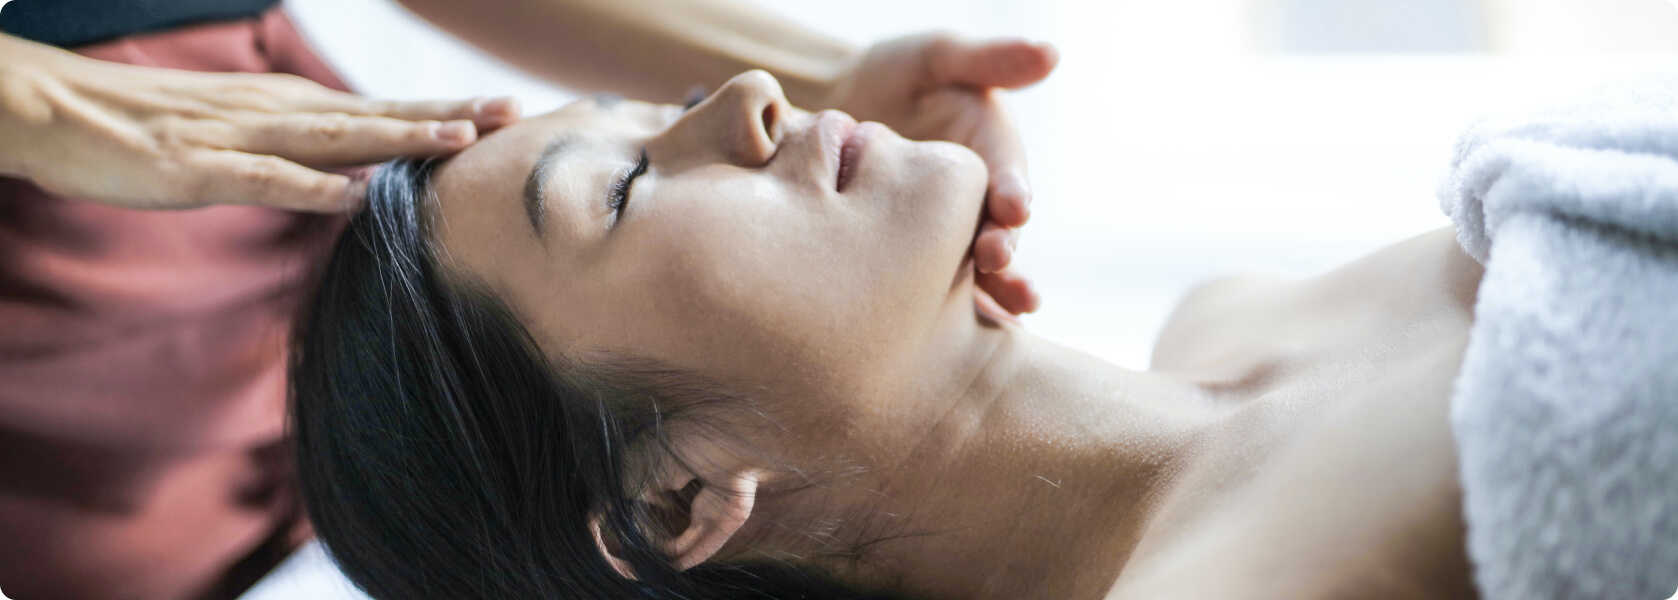 Massage gegen Migräne - Welche Massage gegen Migräne kann ich selbst anwenden?